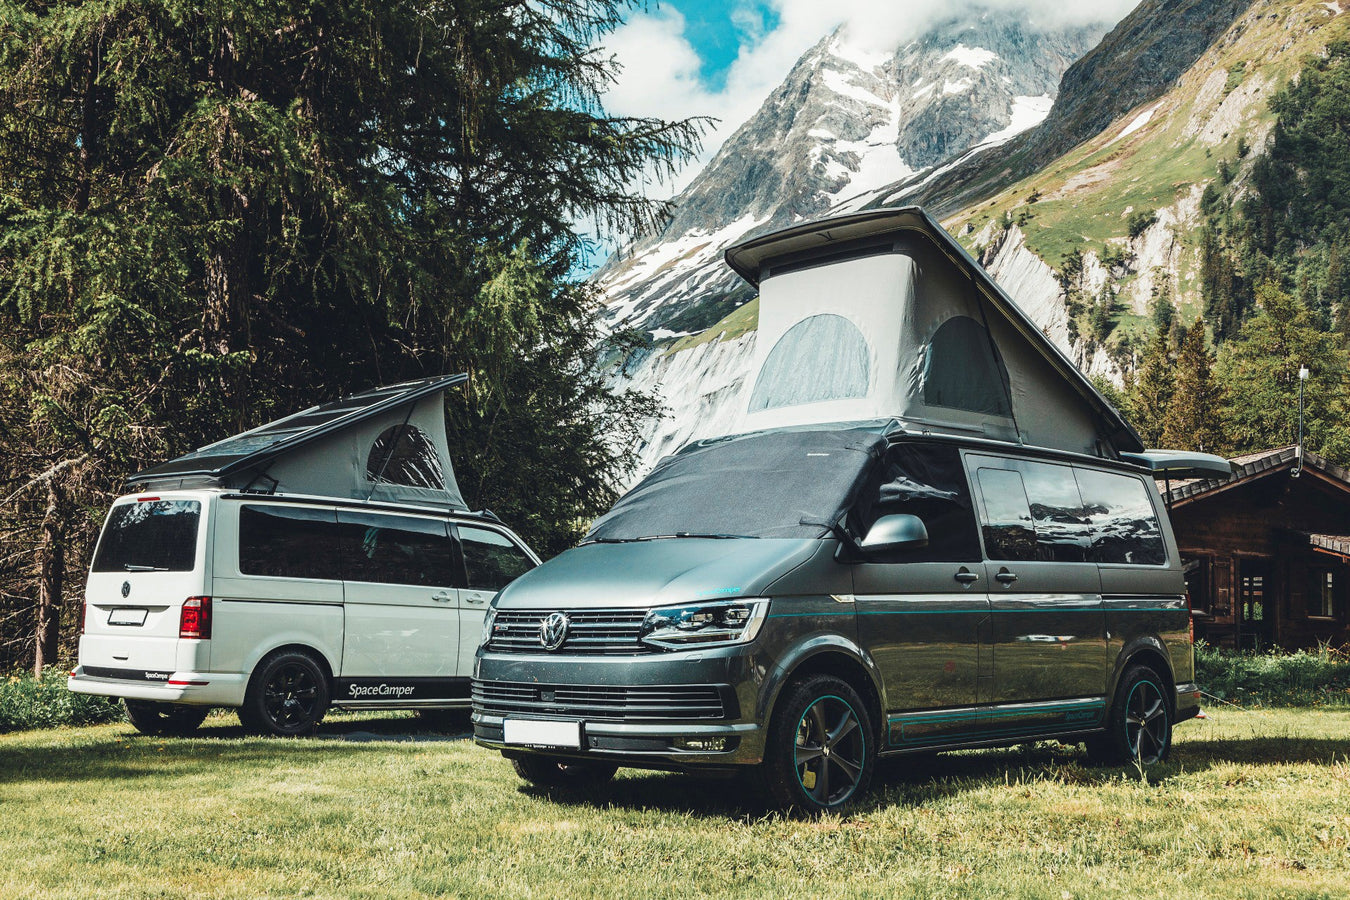 SpaceCamper Heckzelt kaufen im Büssli Campingbus Zubehör Shop Schweiz